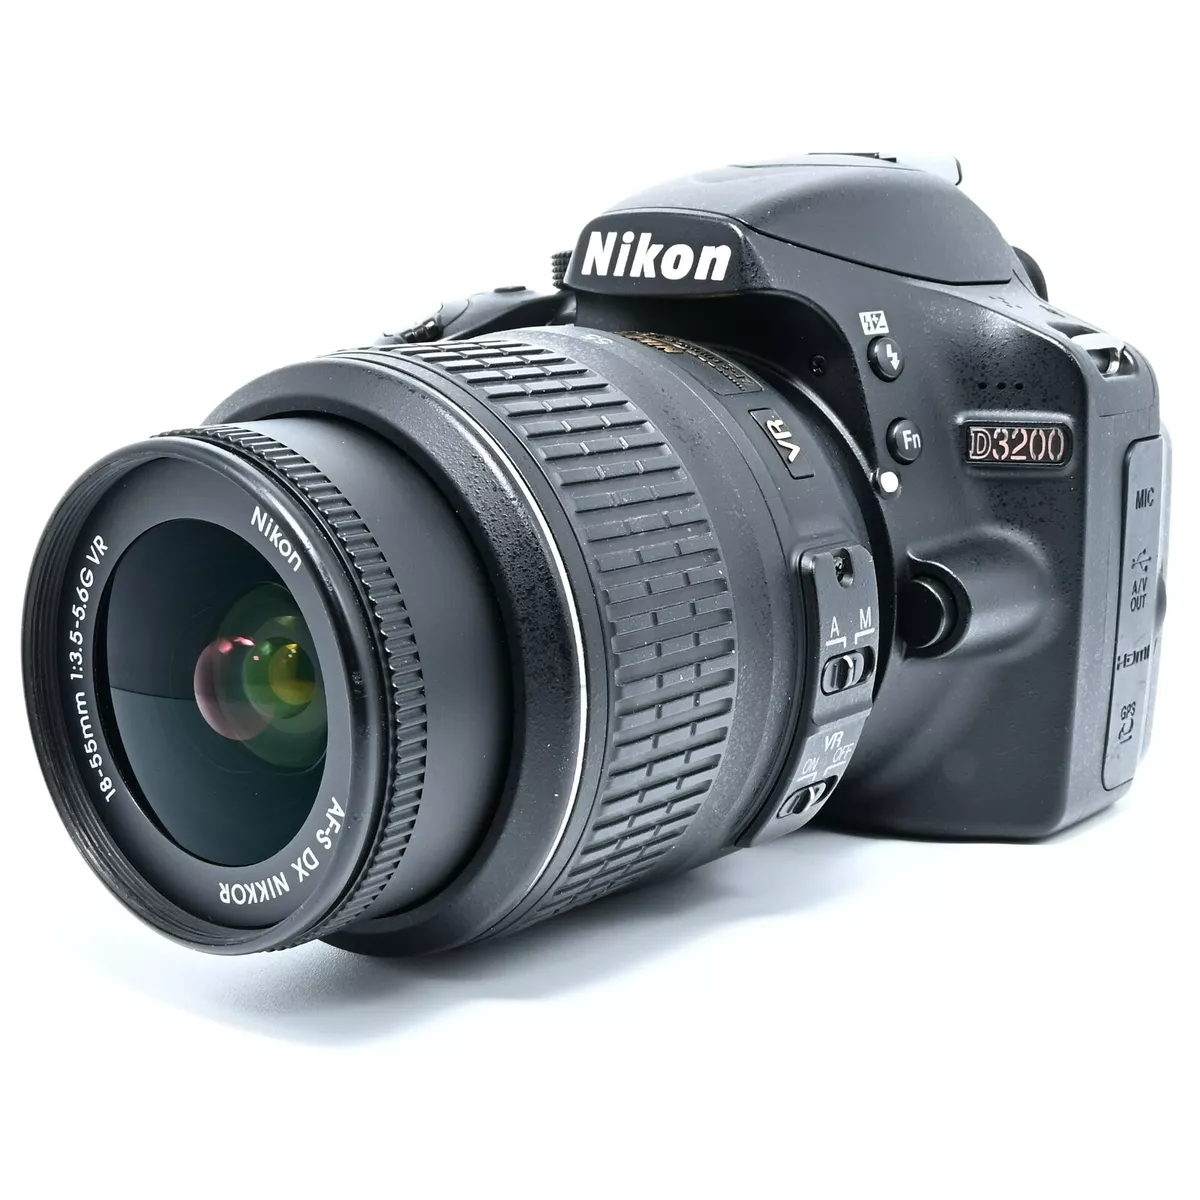 Nikon D3200 DSLR Camera with 18-55mm DX VR Lens Black w/ Charger